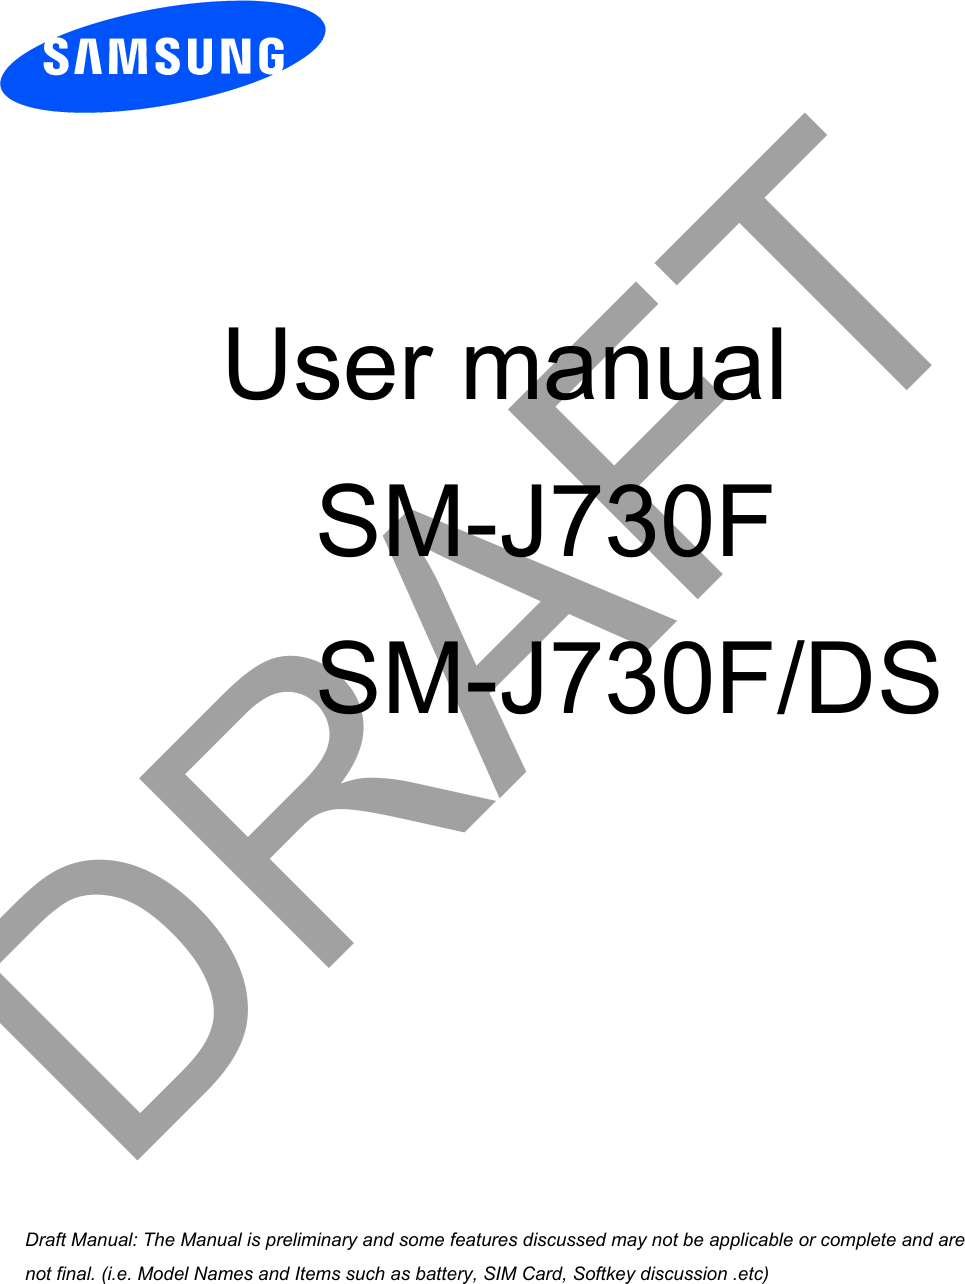  User manual SM-J730F       SM-J730F/DSDRAFTa ana  ana  na and  a dd a n  aa   and a n na  d a and   a a  ad  dn 